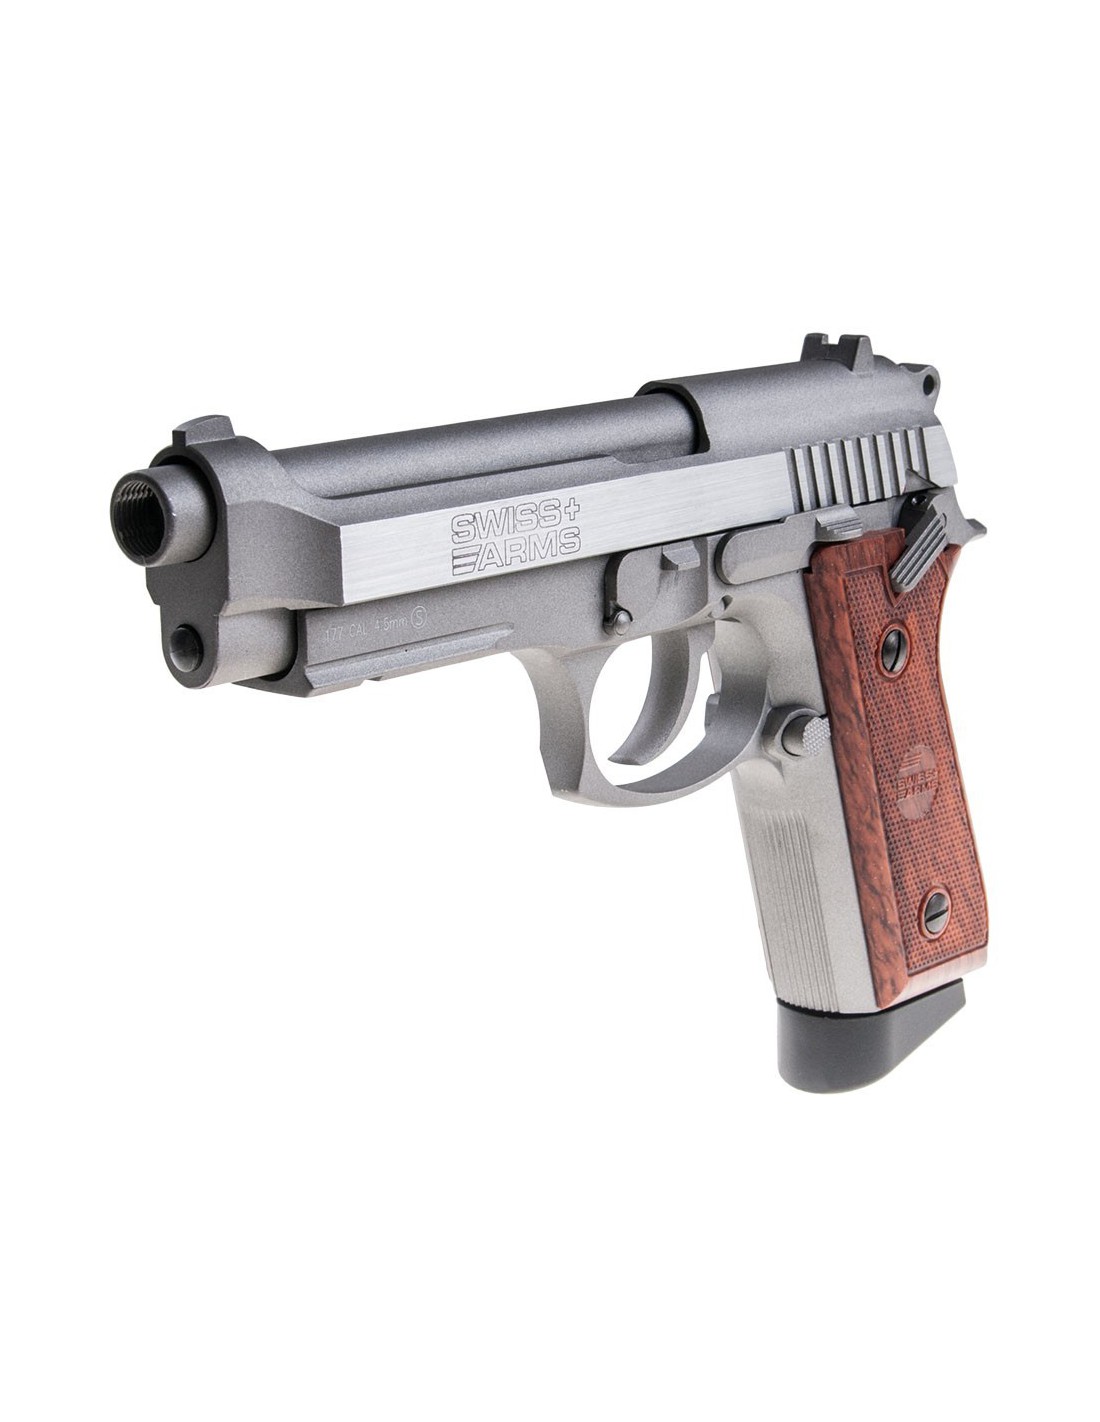 Swiss Arms - Réplique Airsoft Pistolet Co2 P92 4.5mm Full Metal